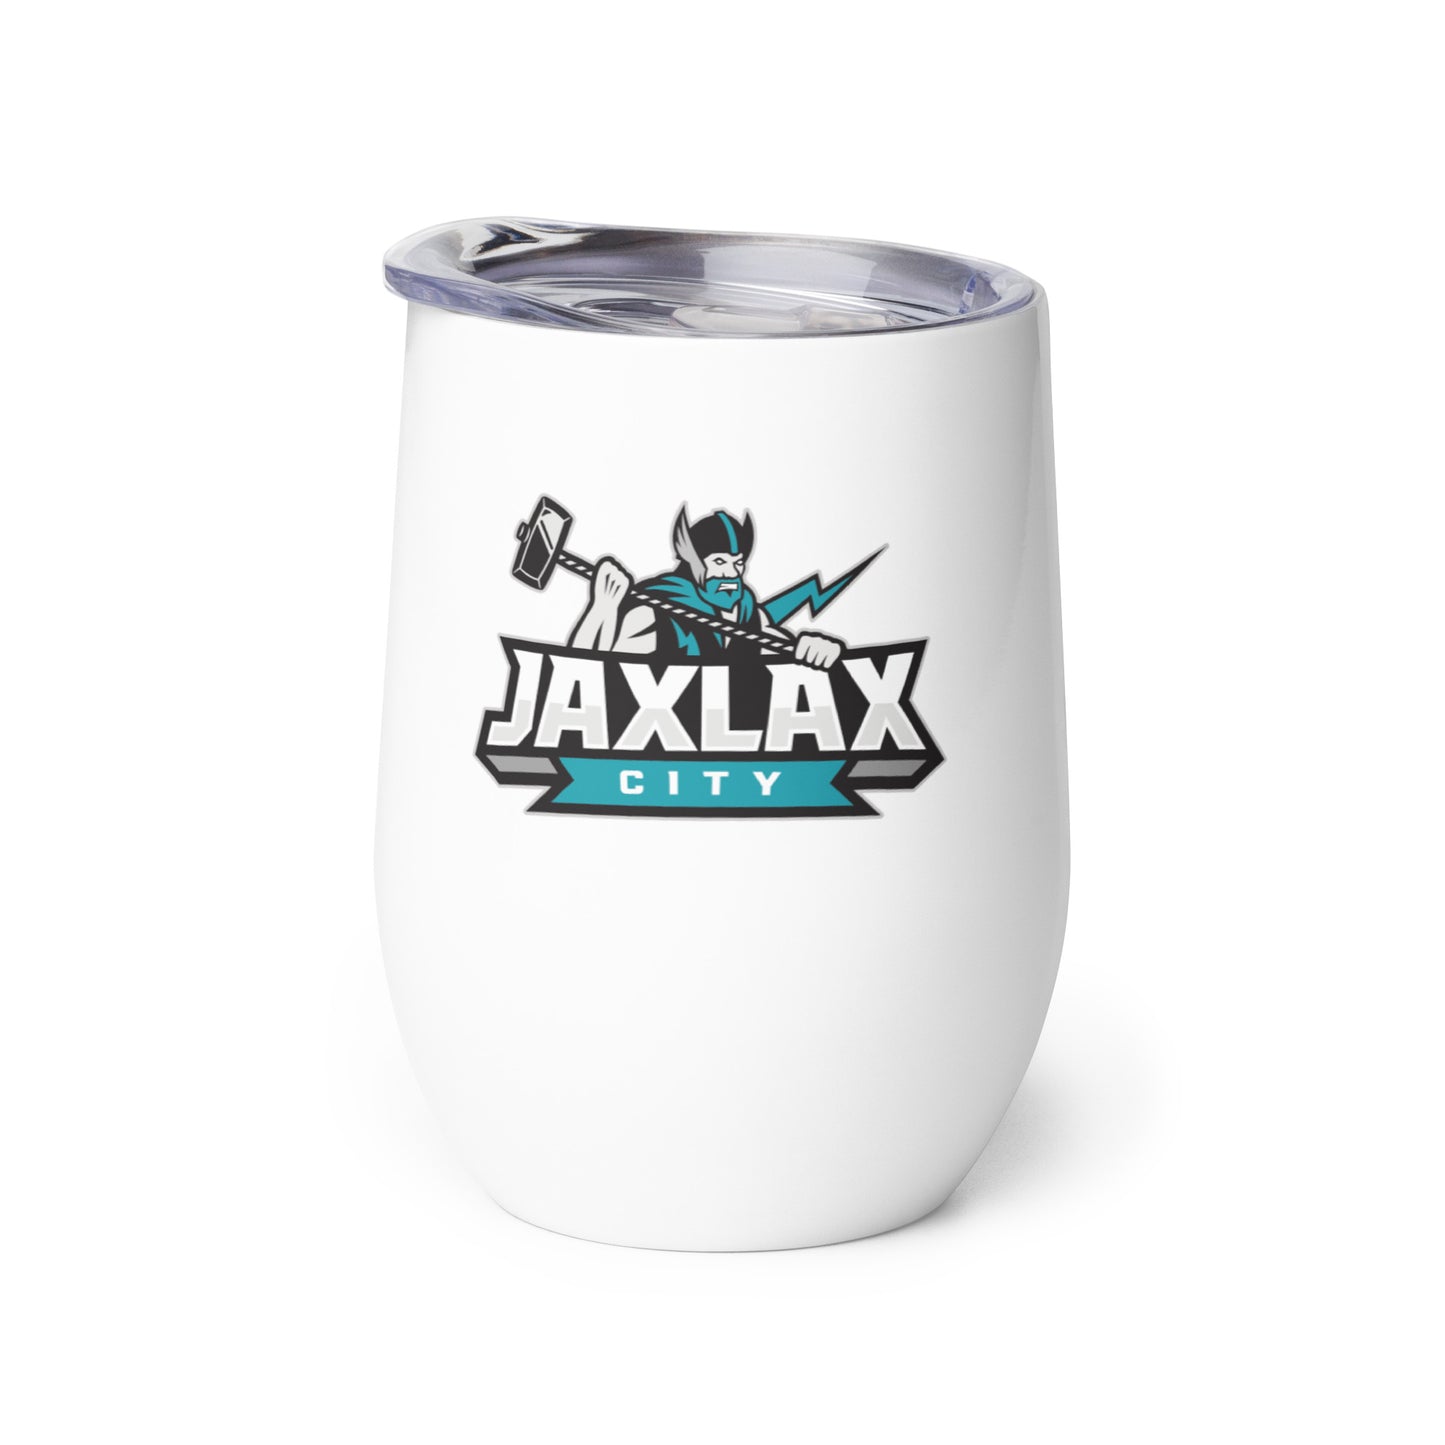 Jax Lax City - Wine tumbler